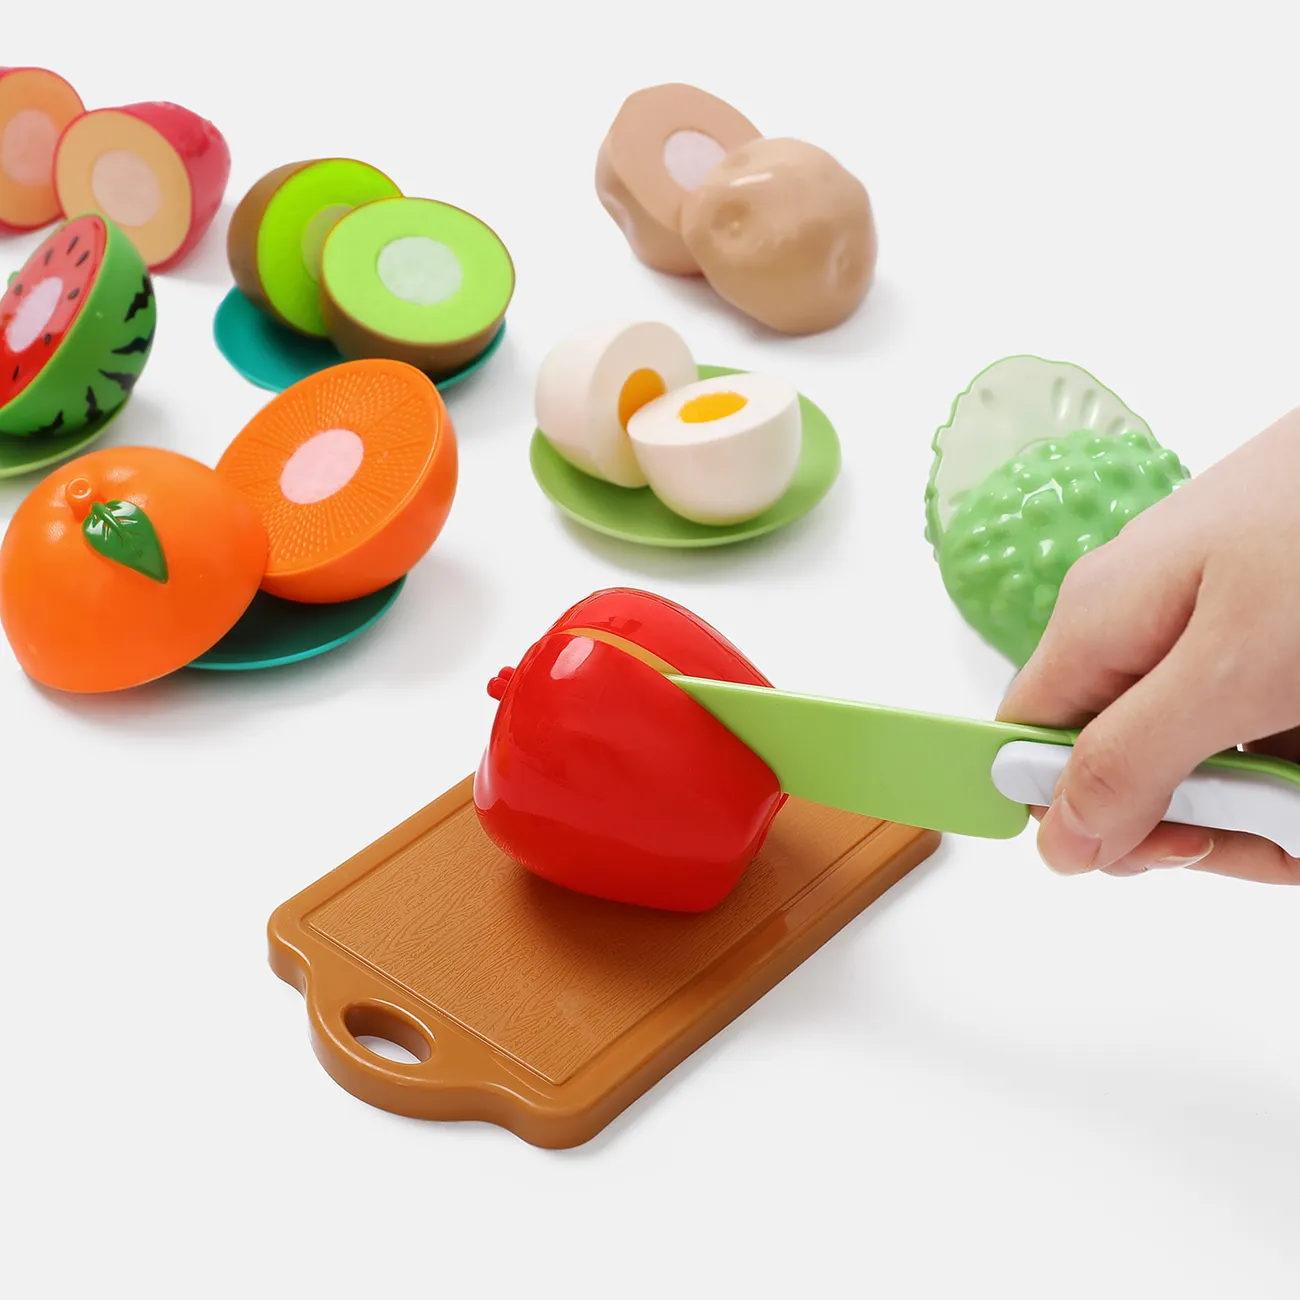 16pcs bpa free taglio di plastica gioco cibo giocattolo bambini